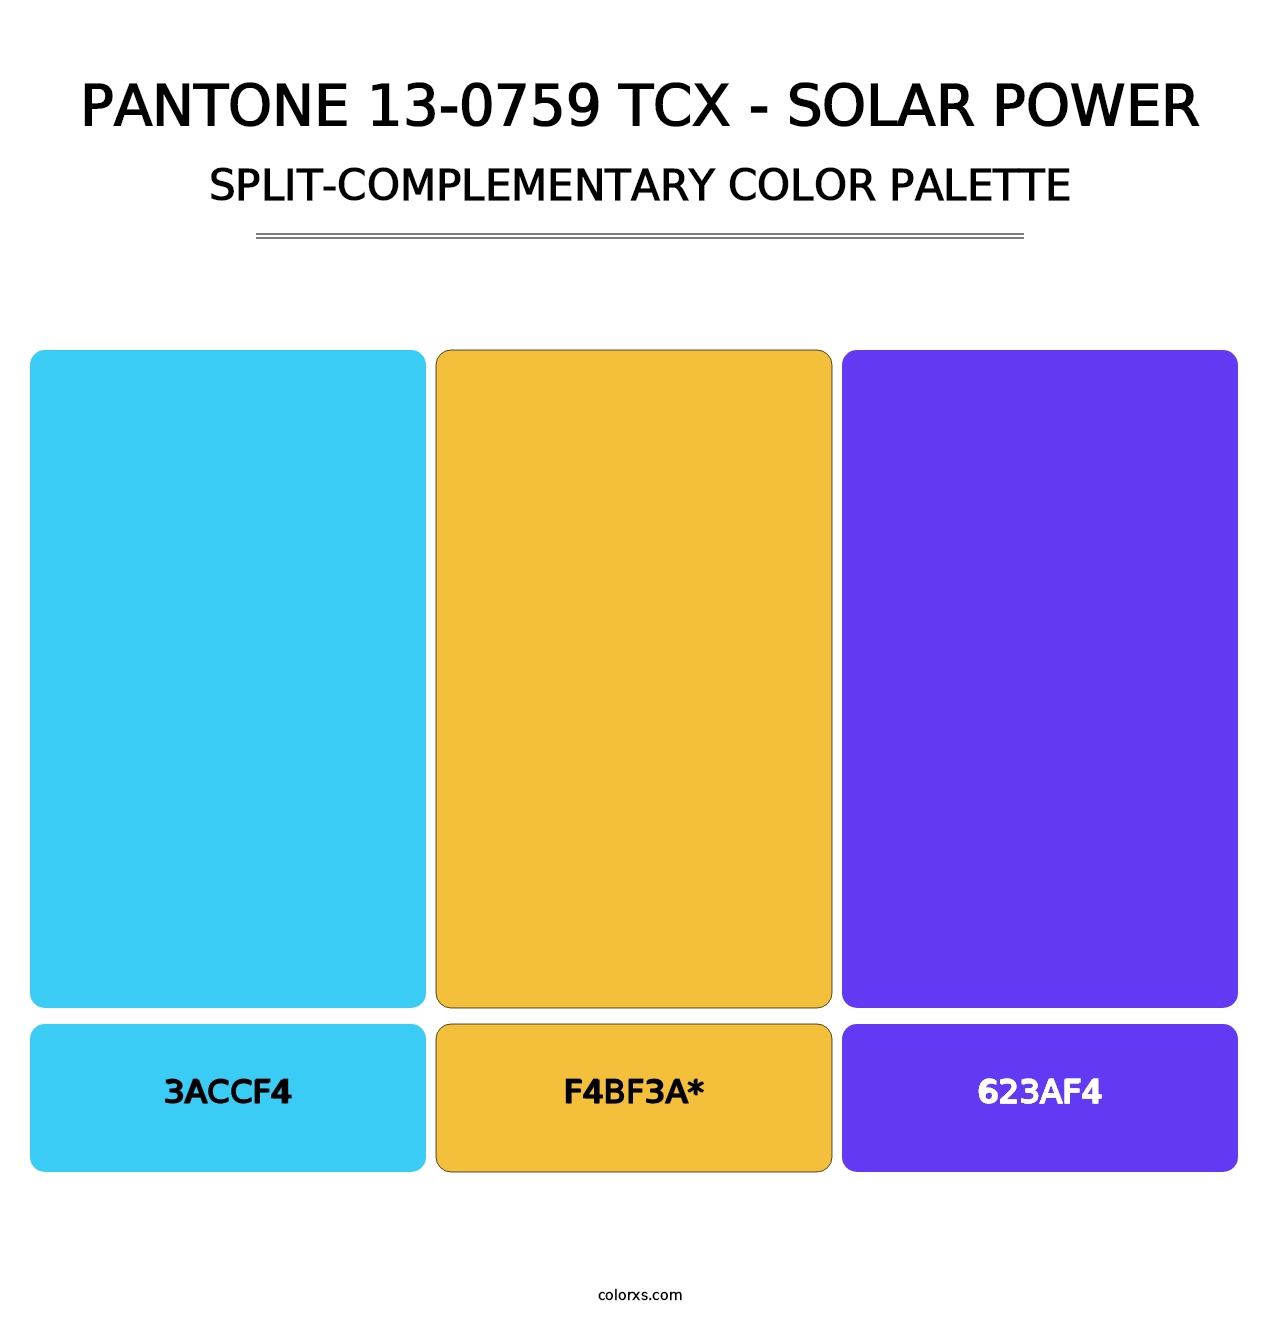 PANTONE 13-0759 TCX - Solar Power - Split-Complementary Color Palette